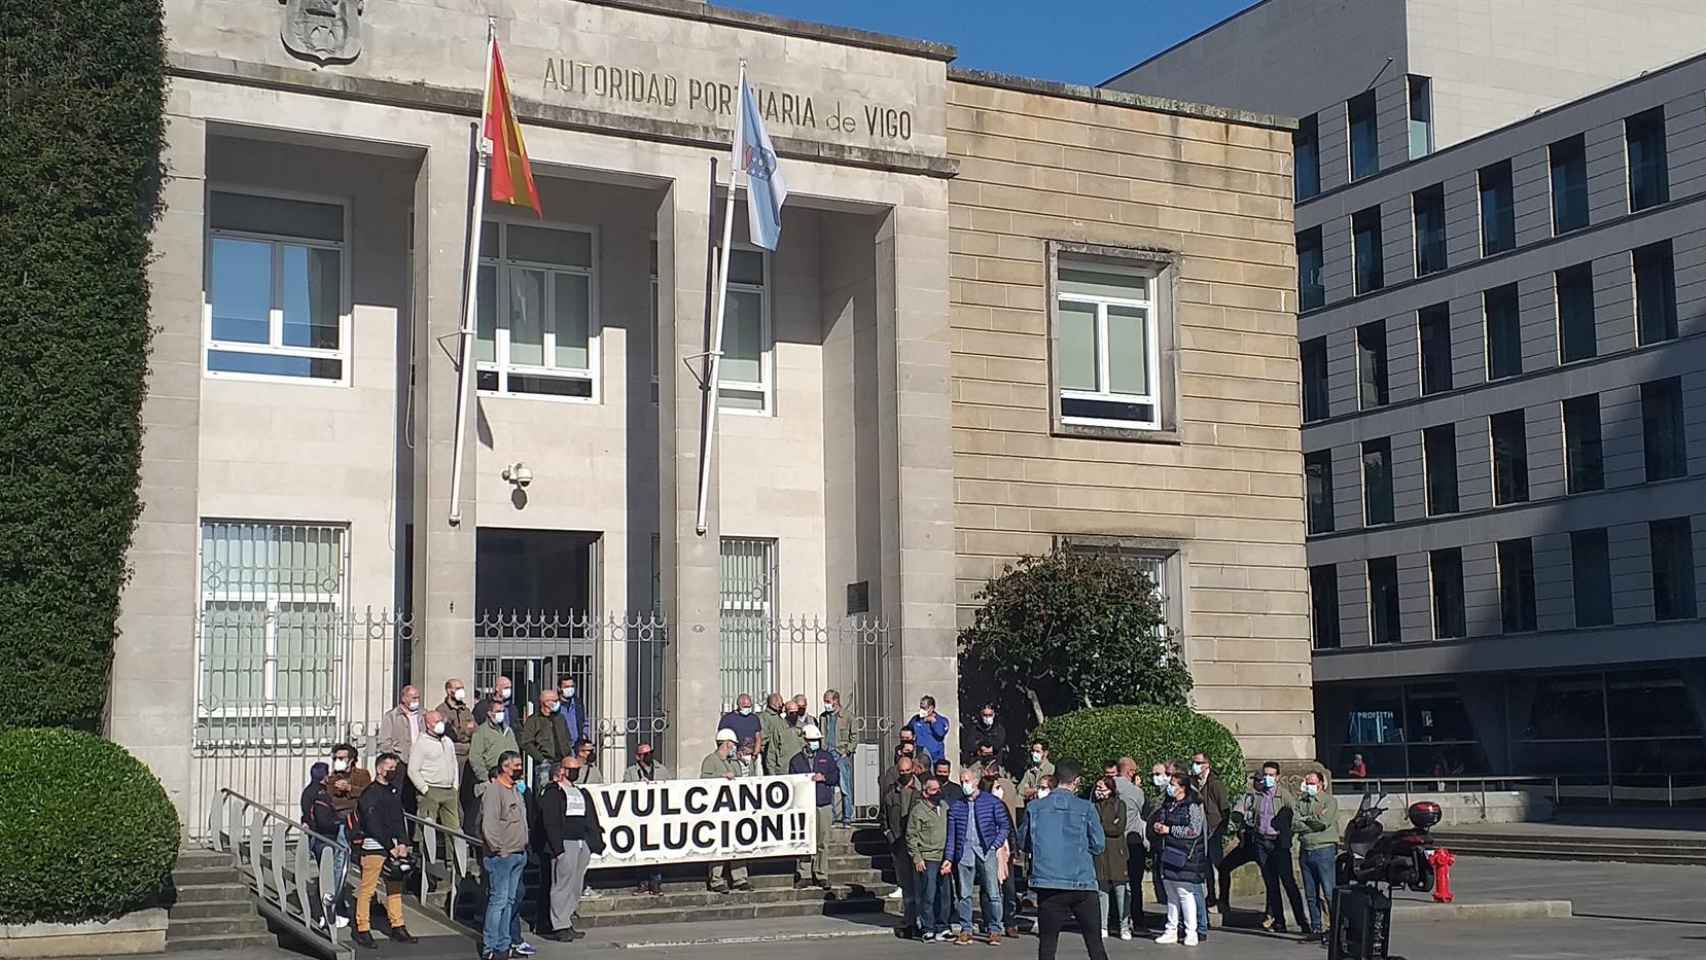 Trabajadores de Vulcano, concentrados frente a la sede de la Autoridad Portuaria de Vigo reclamando una solución.